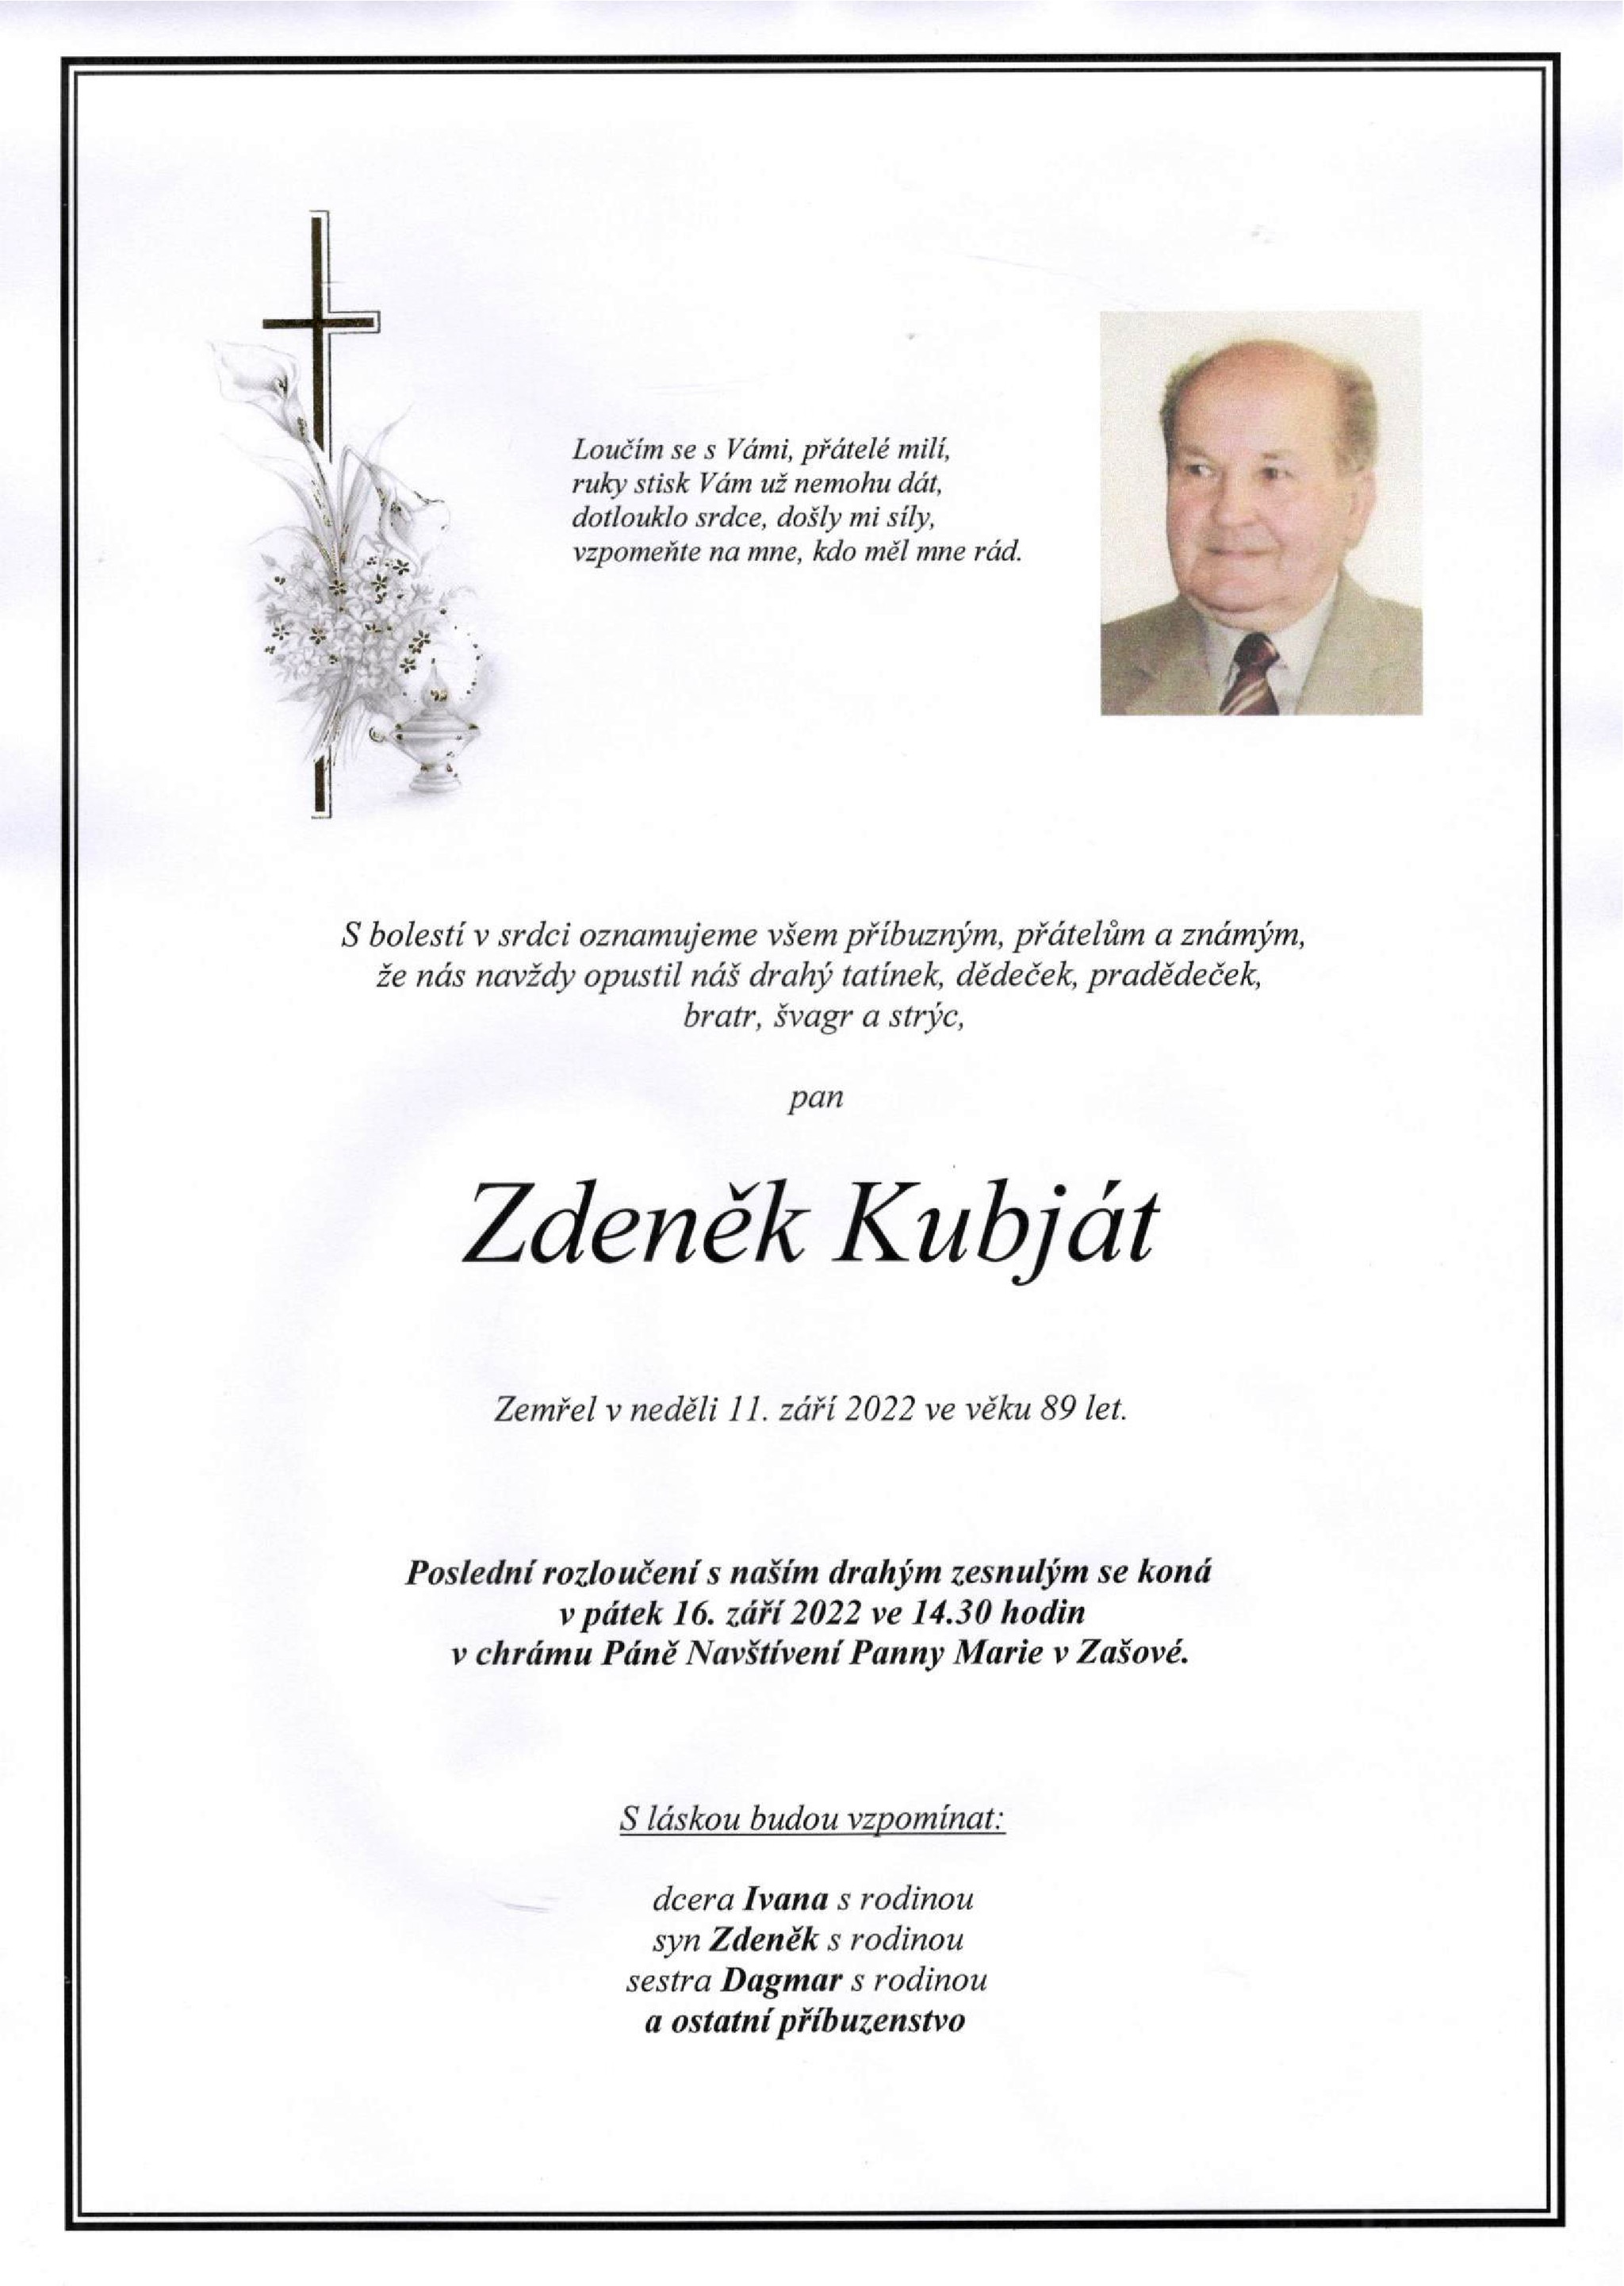 Zdeněk Kubját